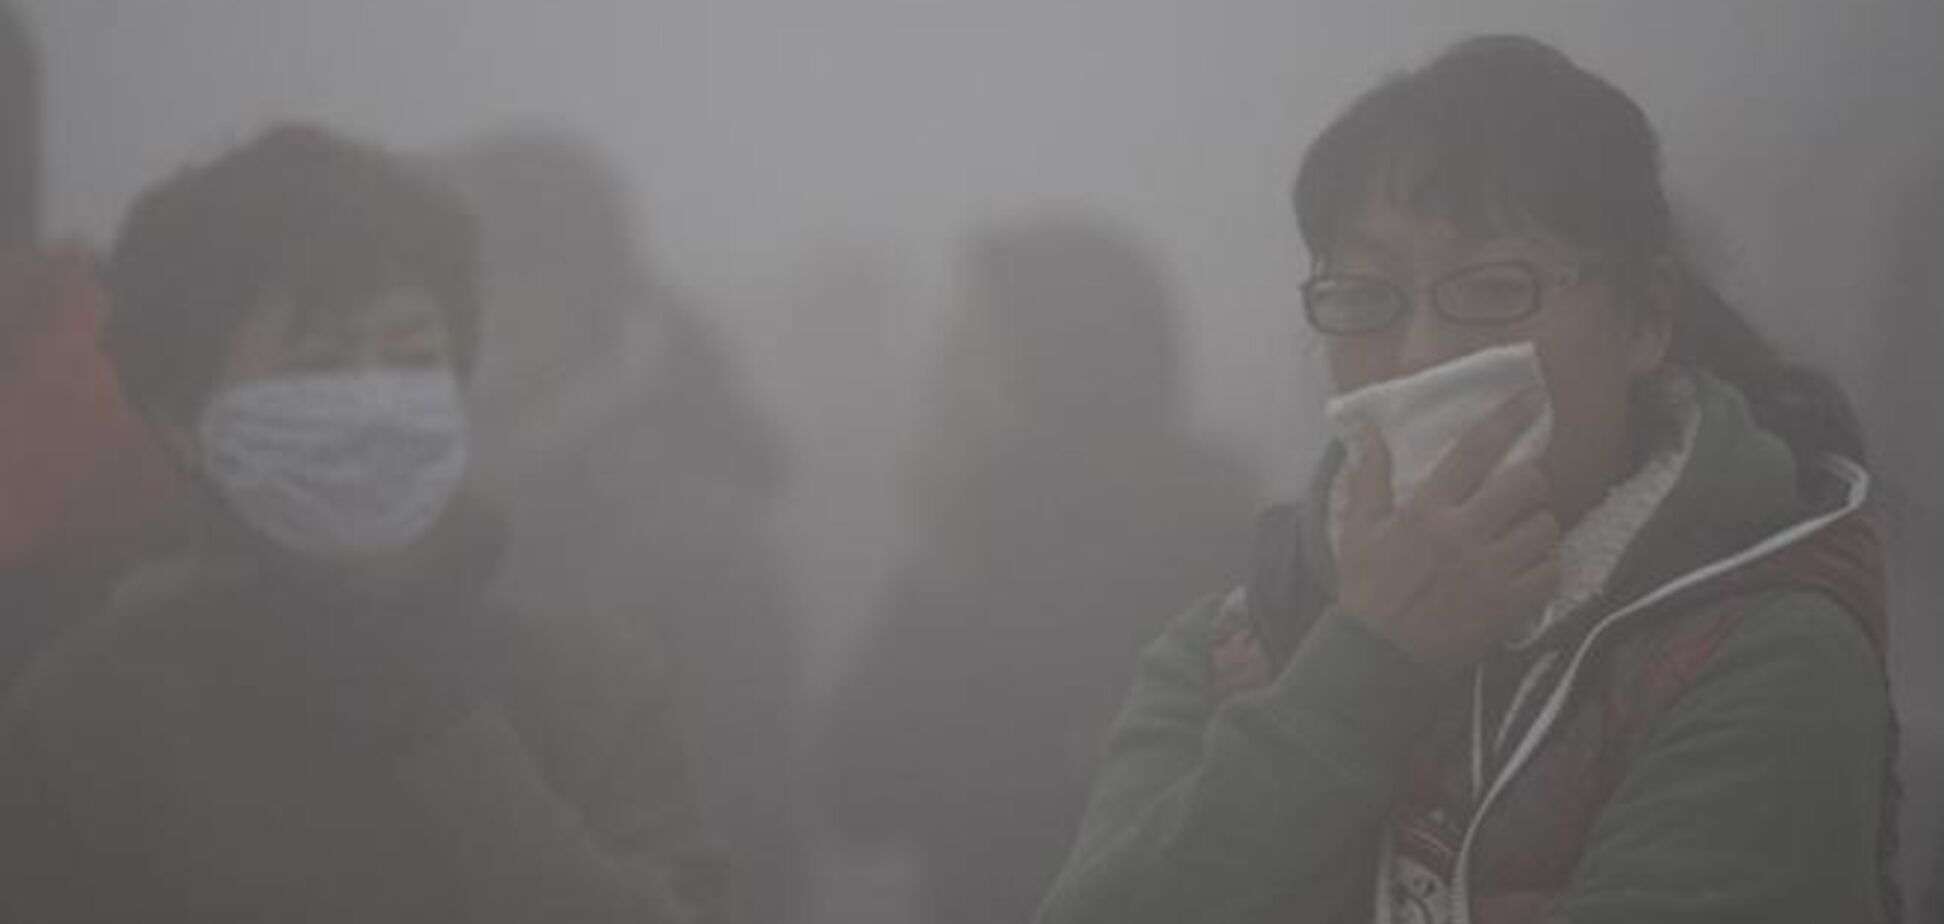 Китайське місто накрив отруйний туман